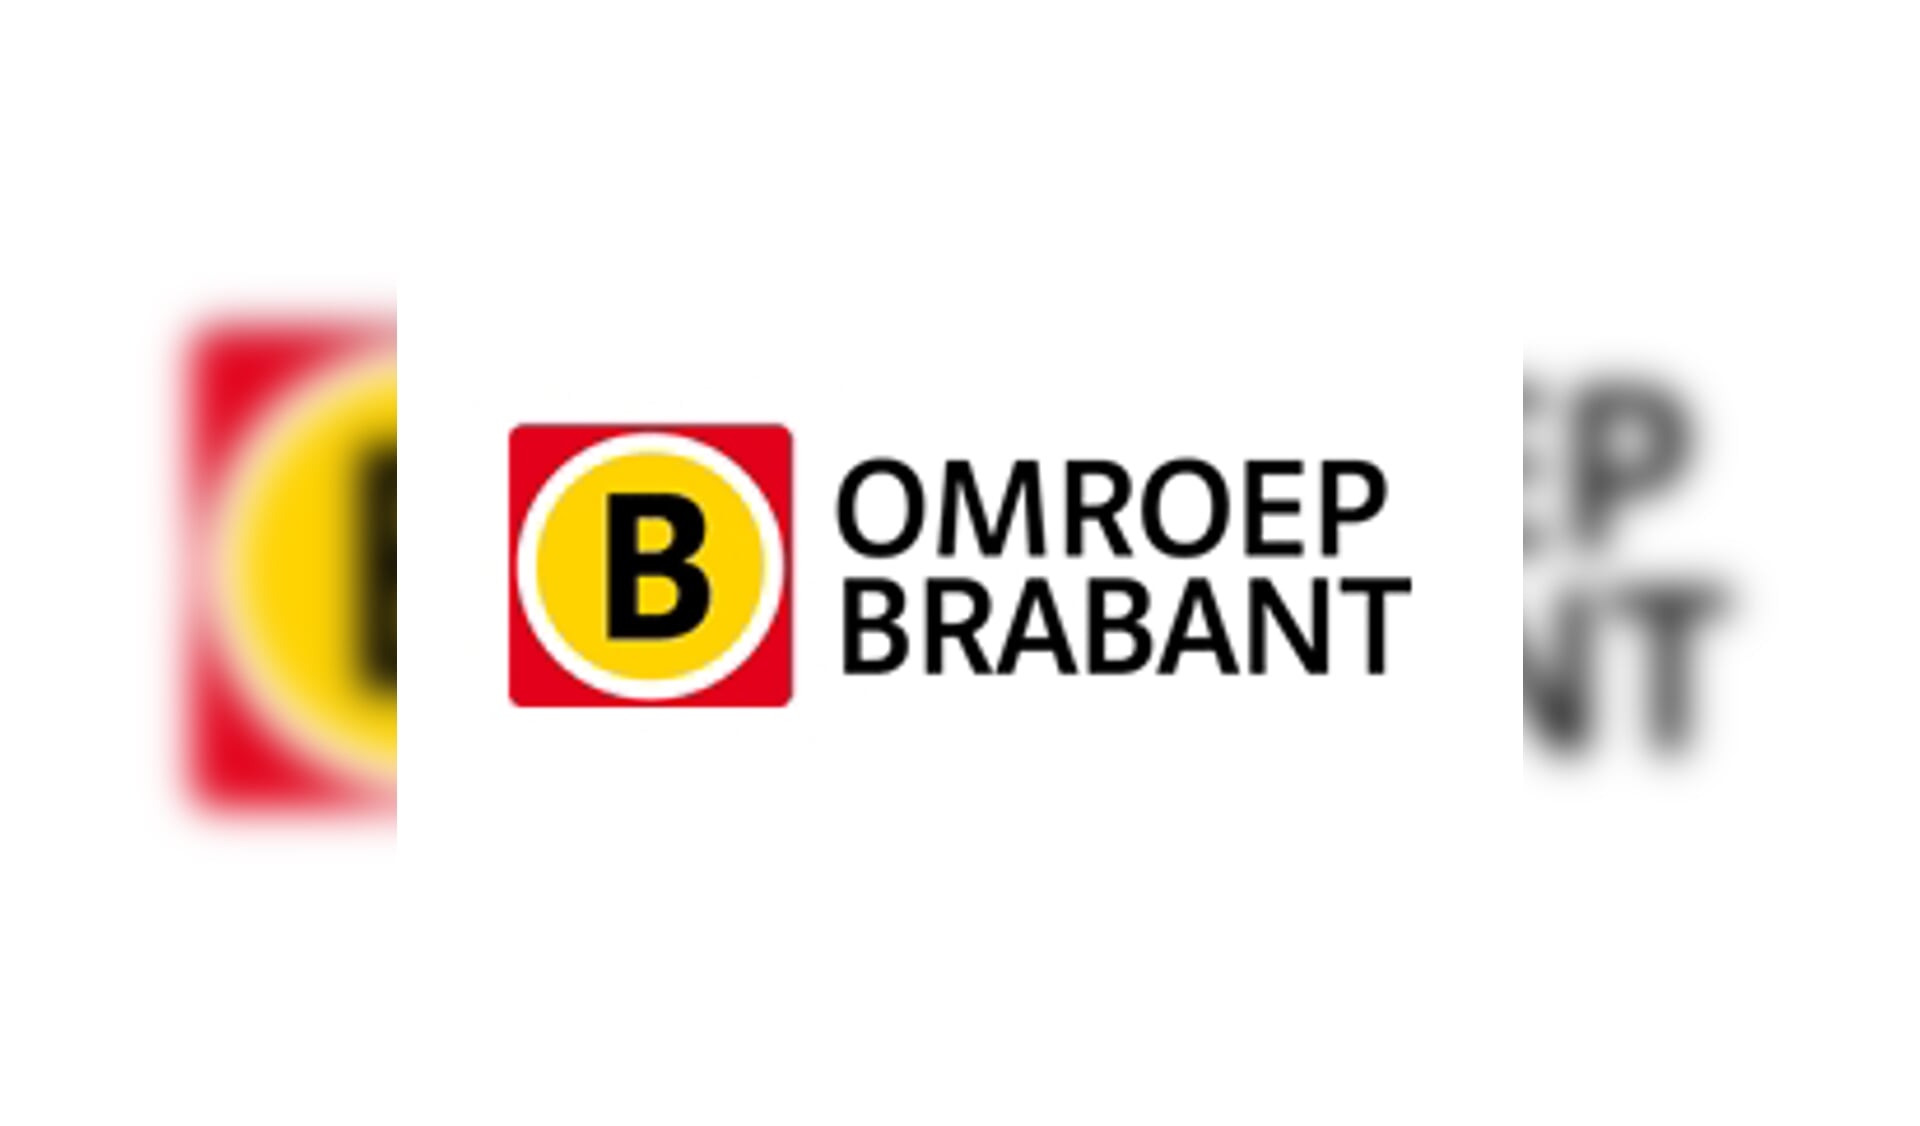 Brabant Onder De Radar vanaf woensdag 11 mei op Omroep Brabant.